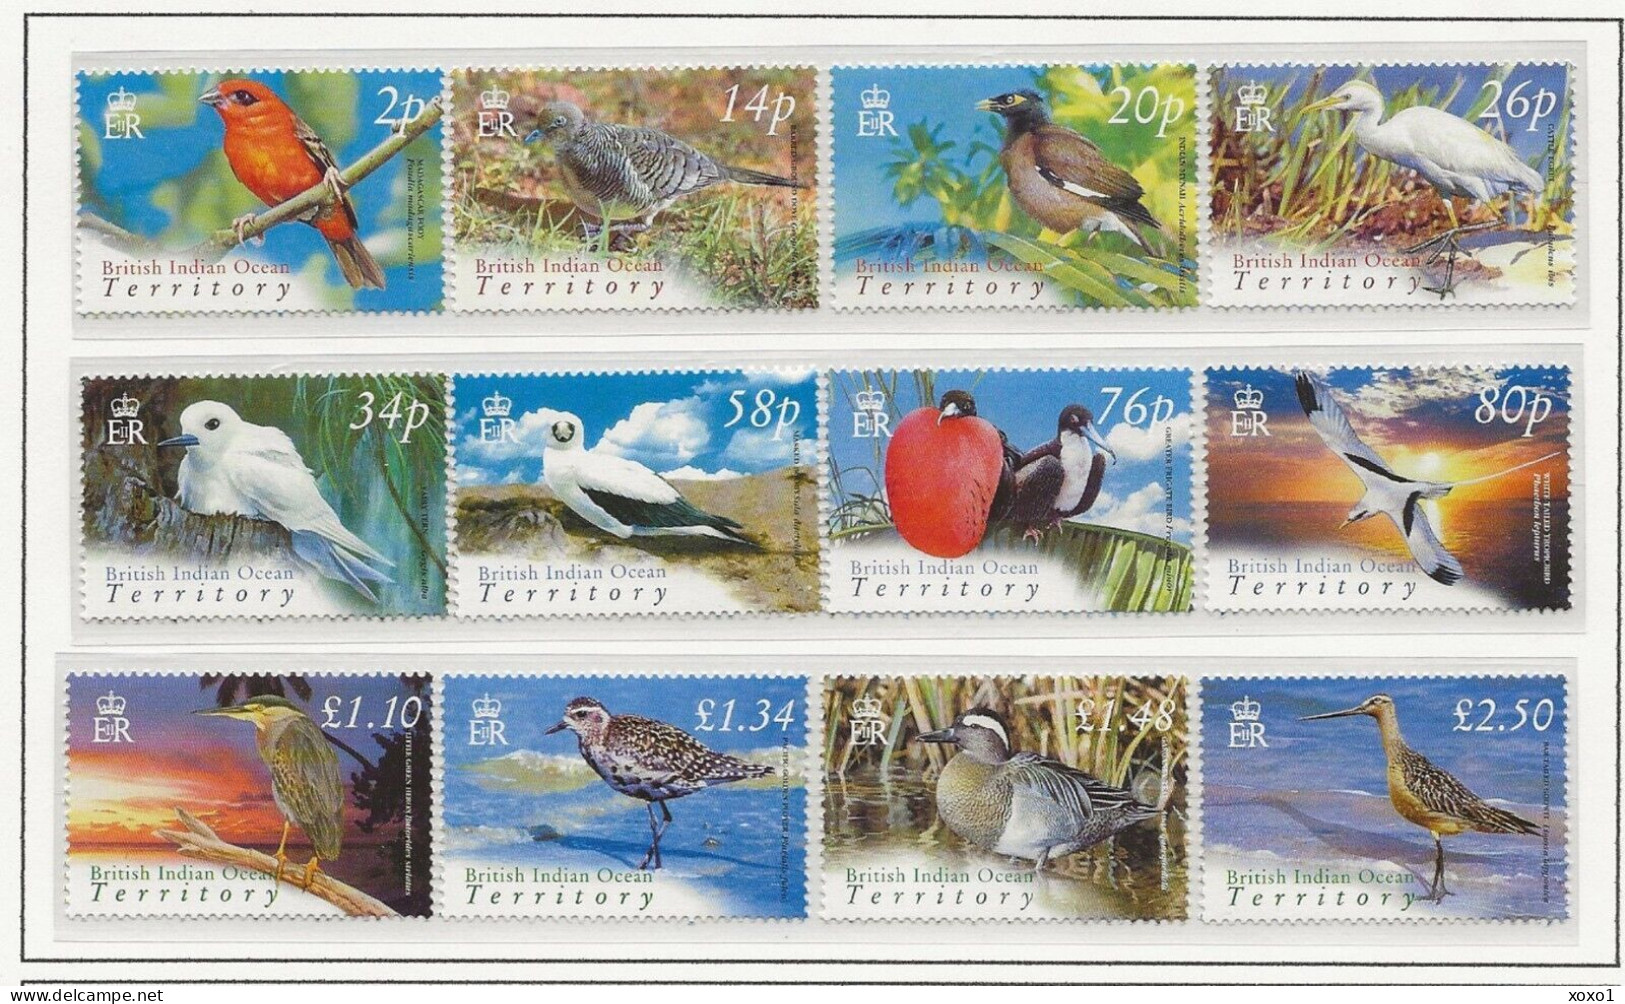 BIOT 2004 MiNr. 340 - 351   Birds  12 V   MNH ** 35.00 € - Territoire Britannique De L'Océan Indien